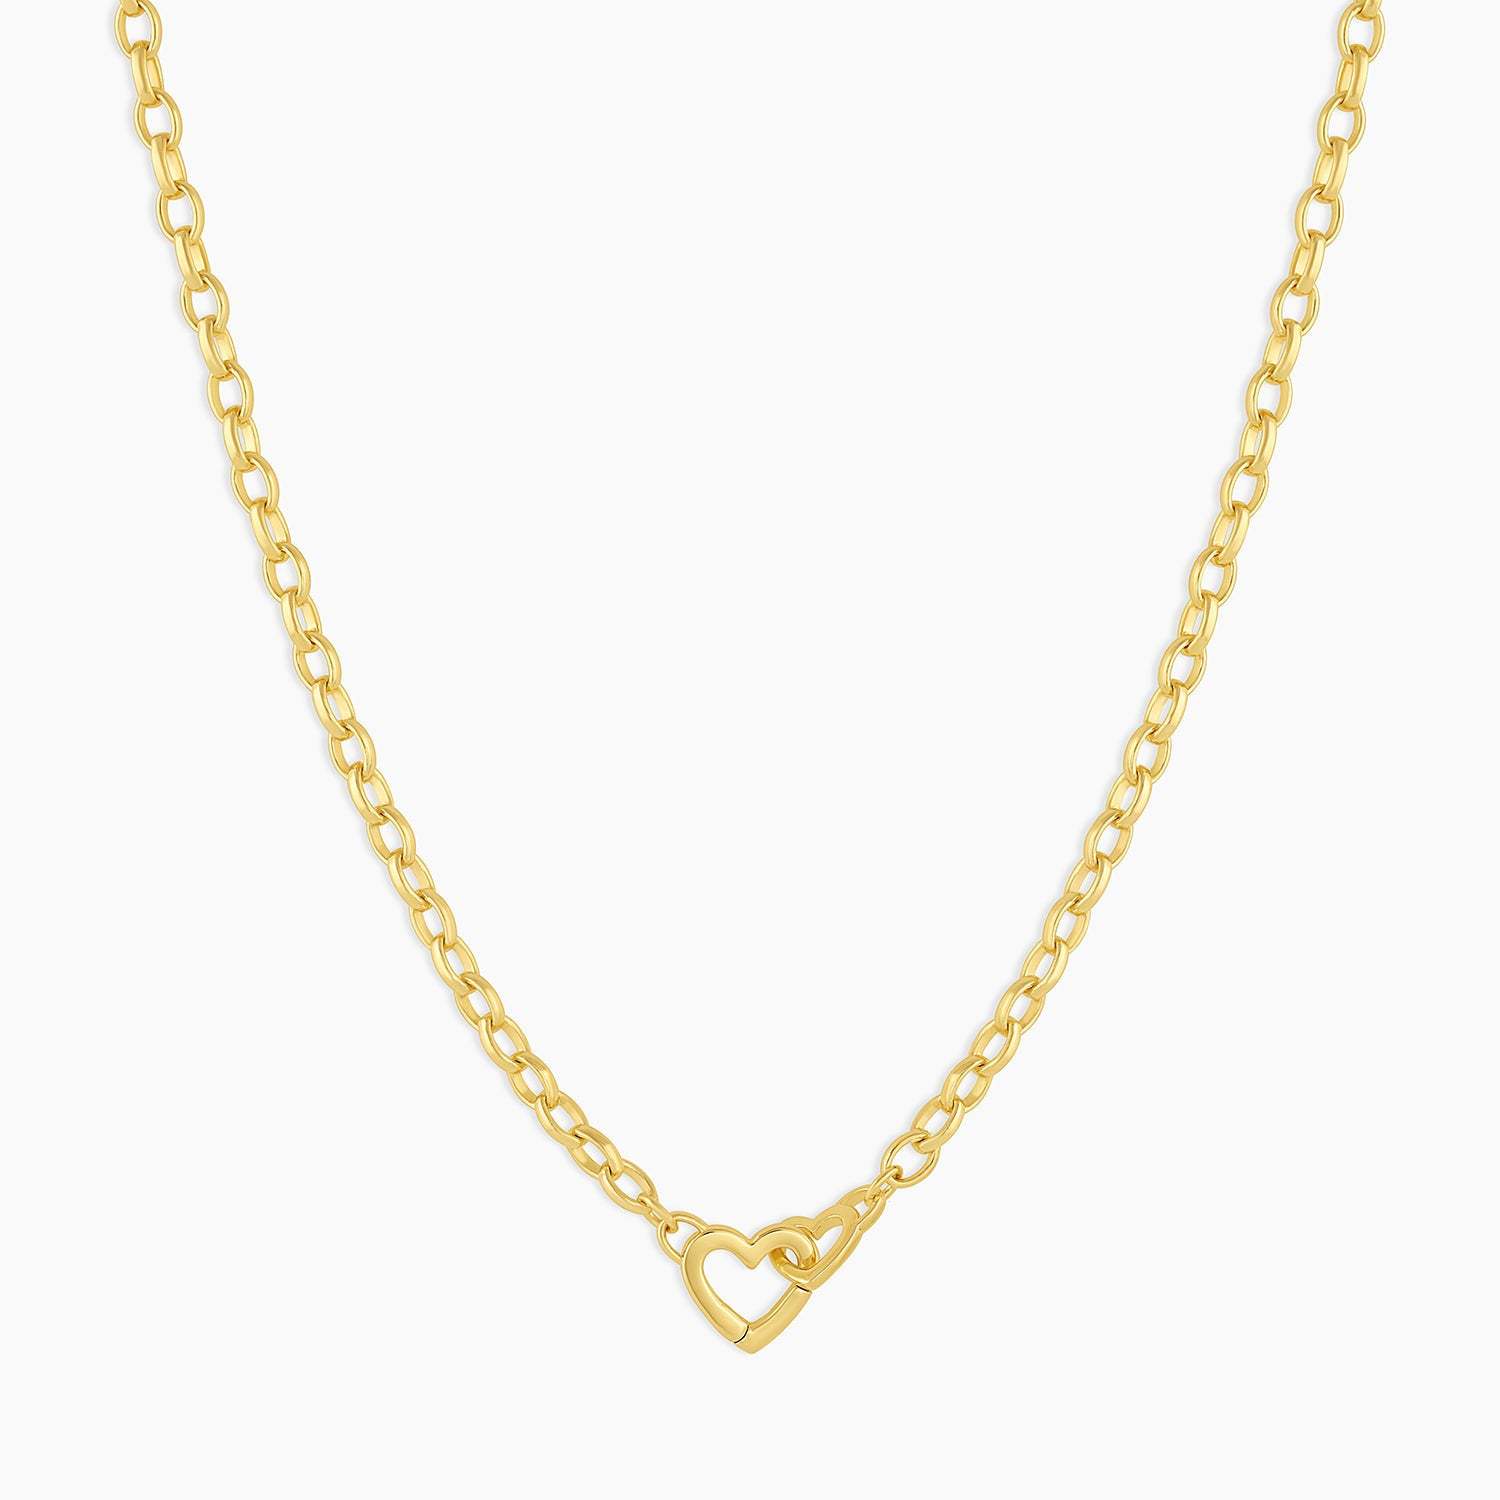 Gold necklace 42cm long